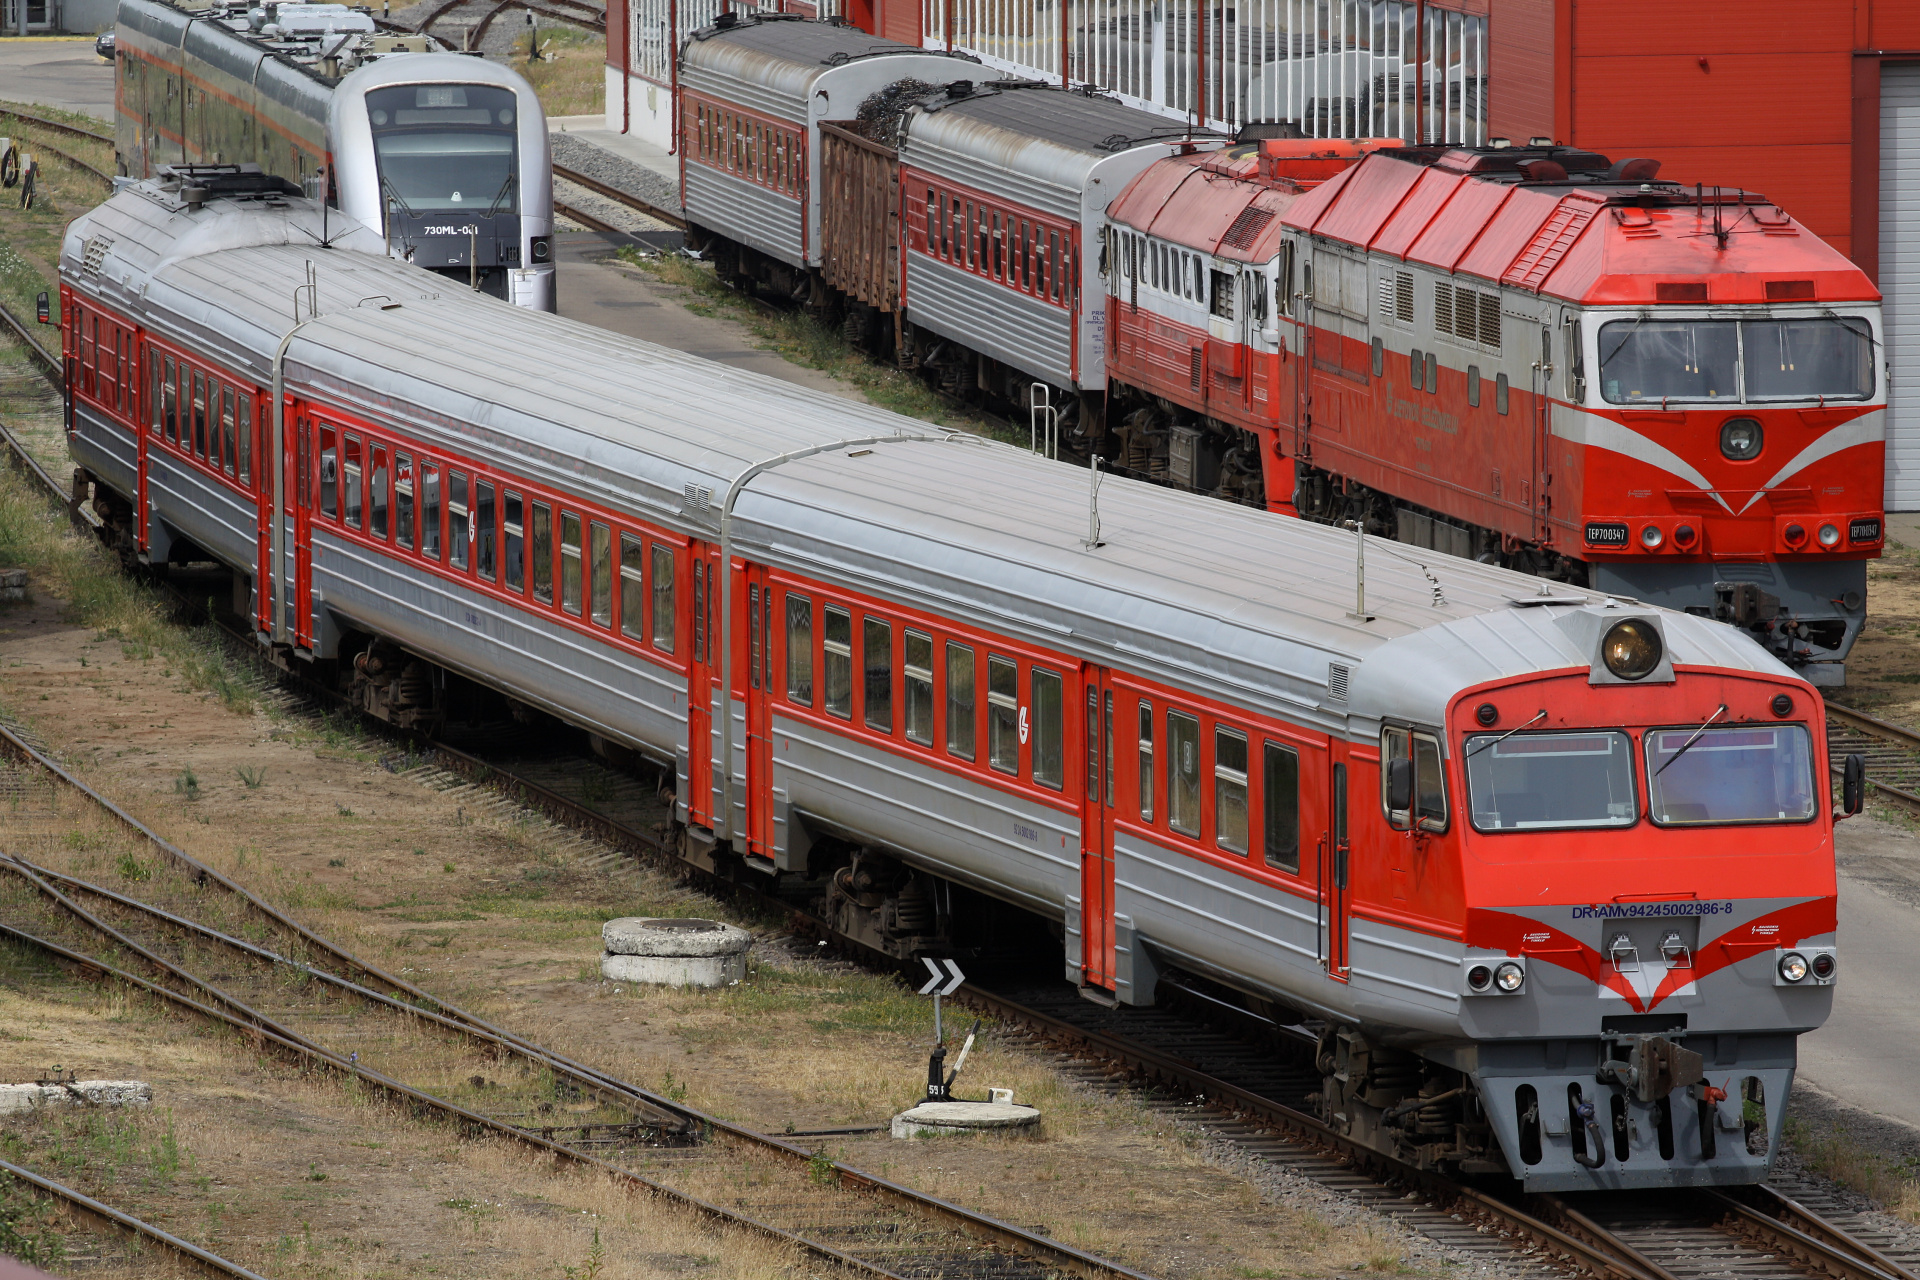 RVR DR1AM 986 (Podróże » Wilno » Pojazdy » Pociągi i lokomotywy)